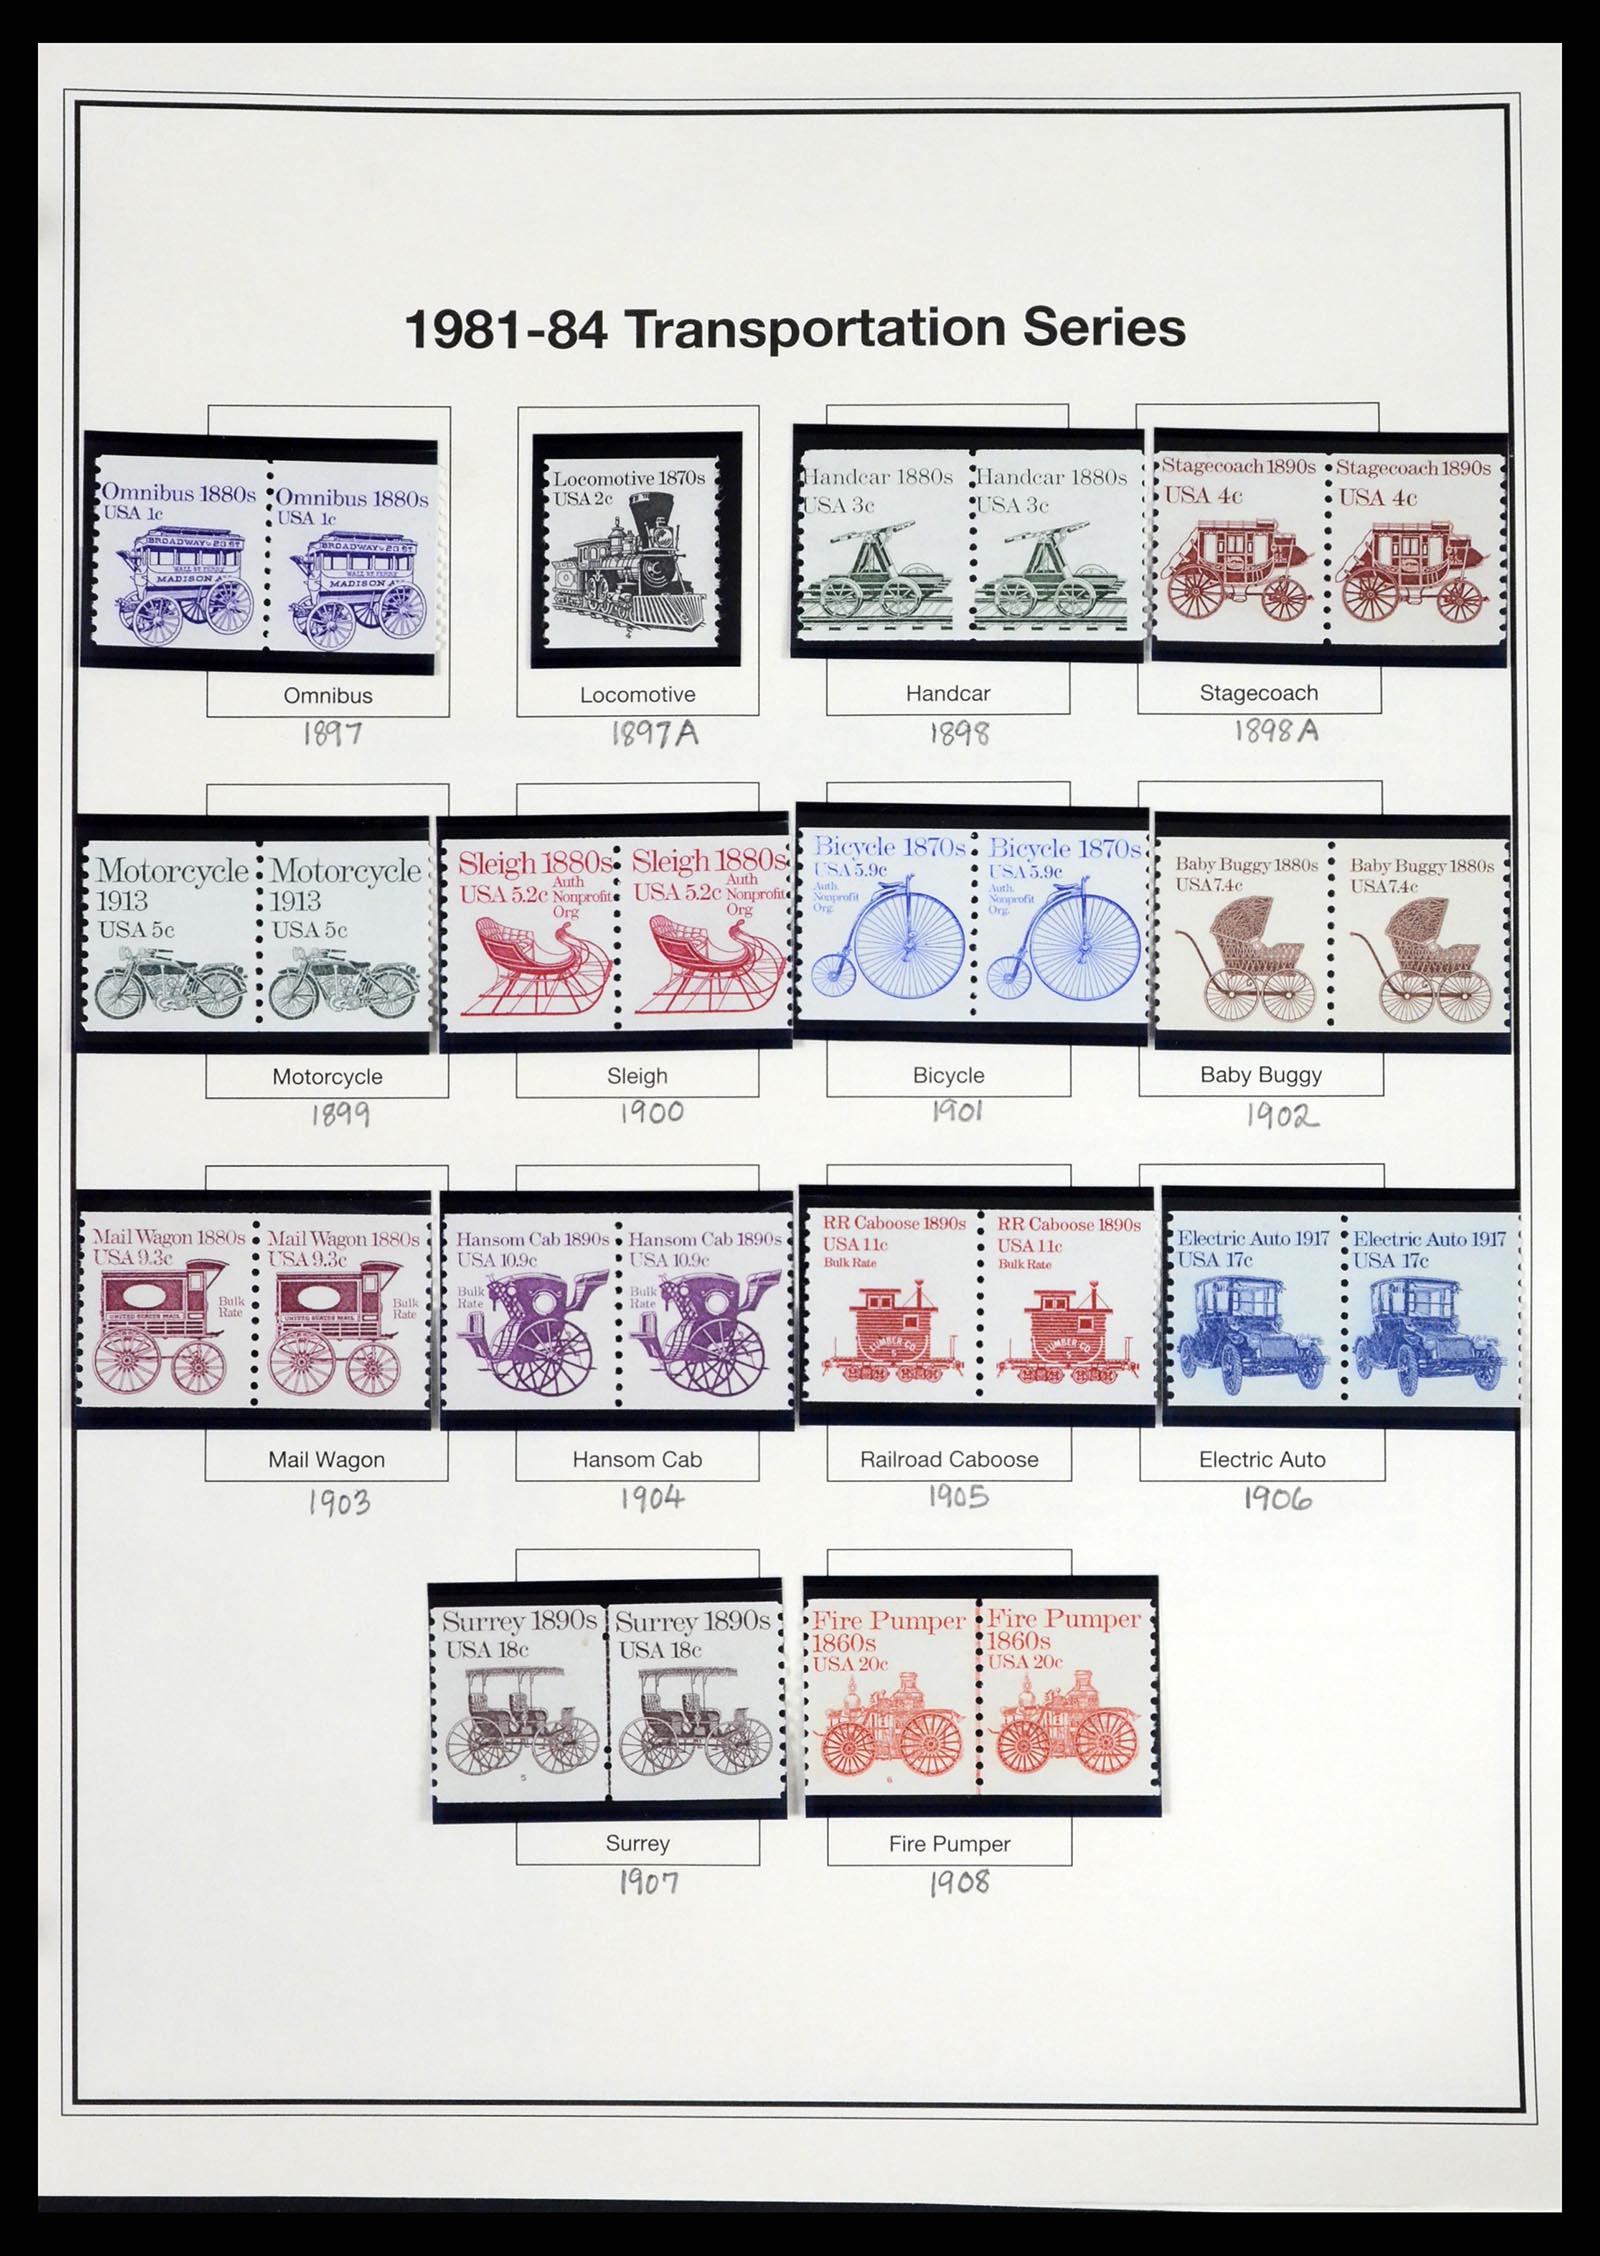 37193 064 - Stamp collection 37193 USA 1970-2020!